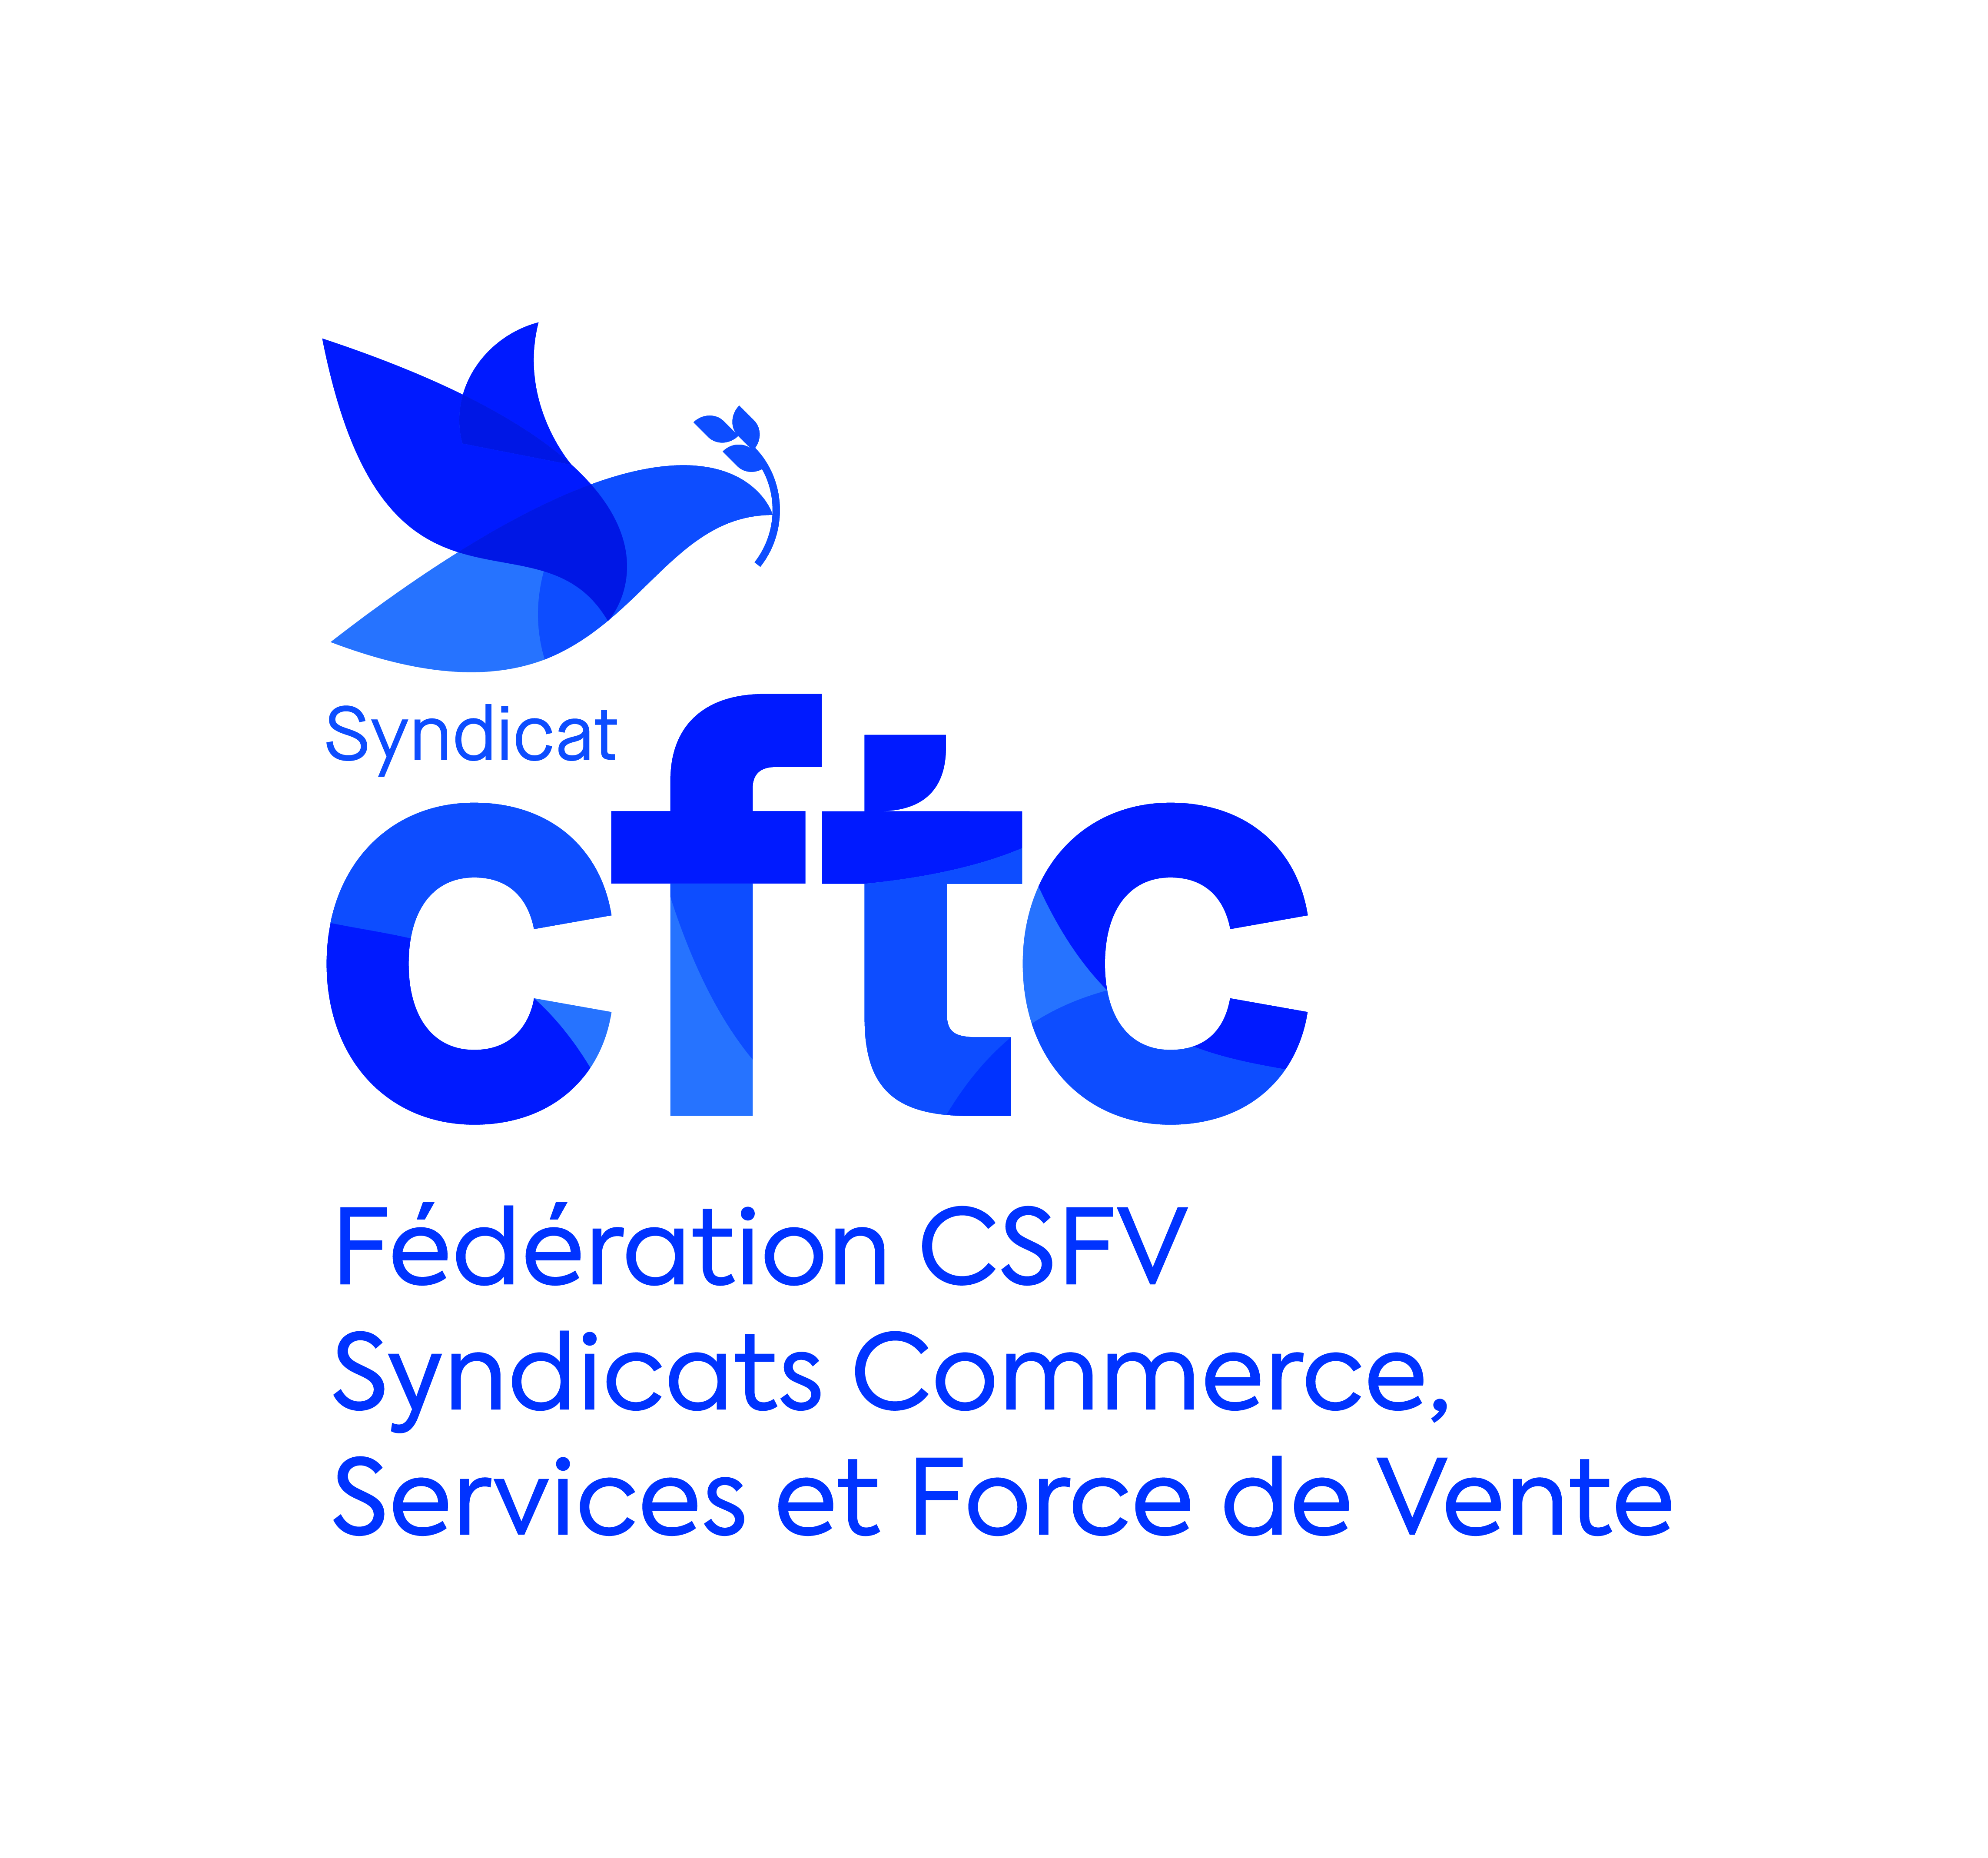 CFTC-Fédération CSFV _Syndicats Commerce, _Services et Force de Vente.jpg